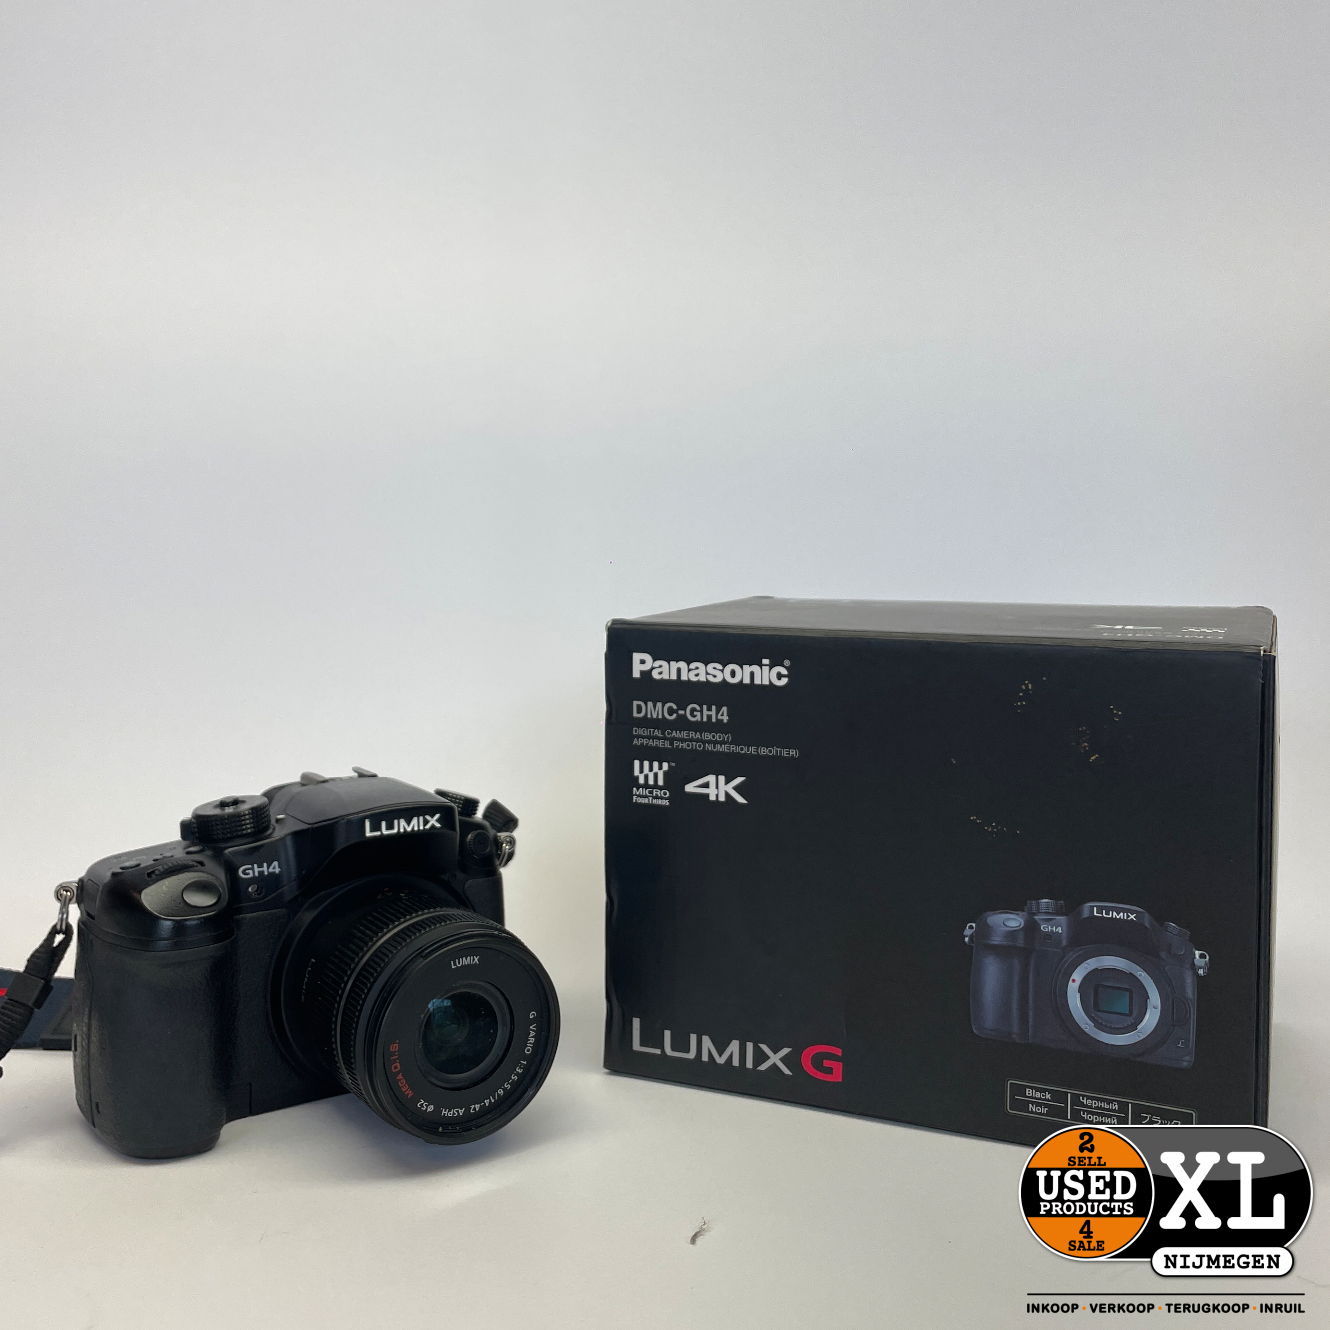 Doctor in de filosofie Bewijs Investeren Panasonic Lumix GH4 Camera 4K met 14-42 mm Lens en Tas | Nette Staat - Used  Products Nijmegen XL